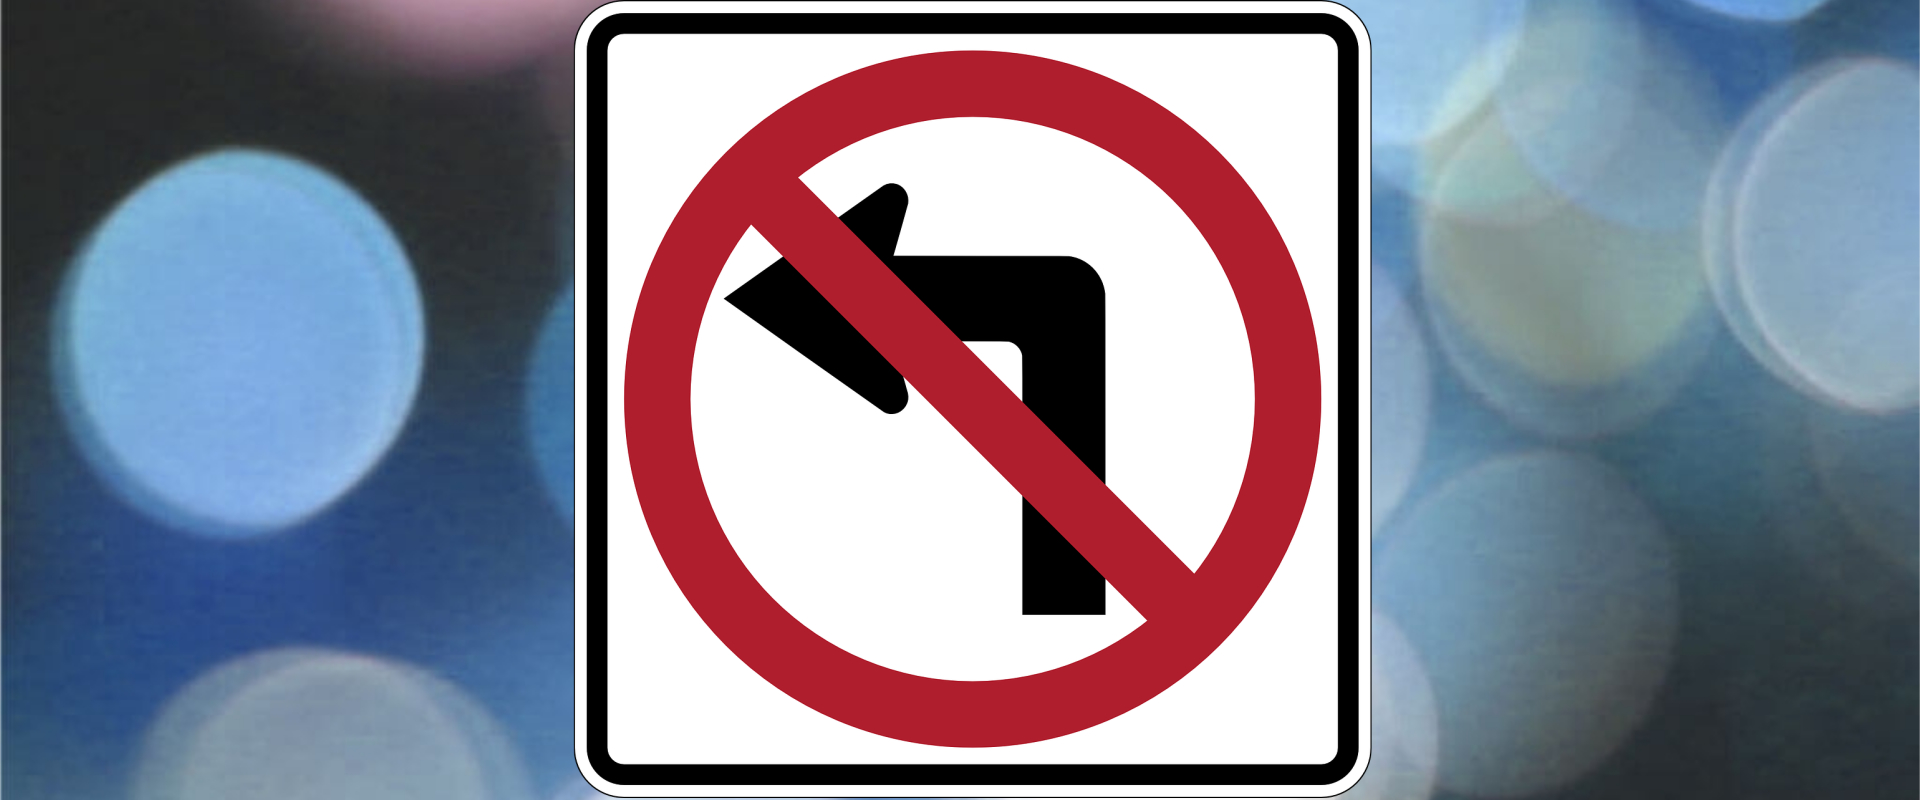 Don't Turn Left